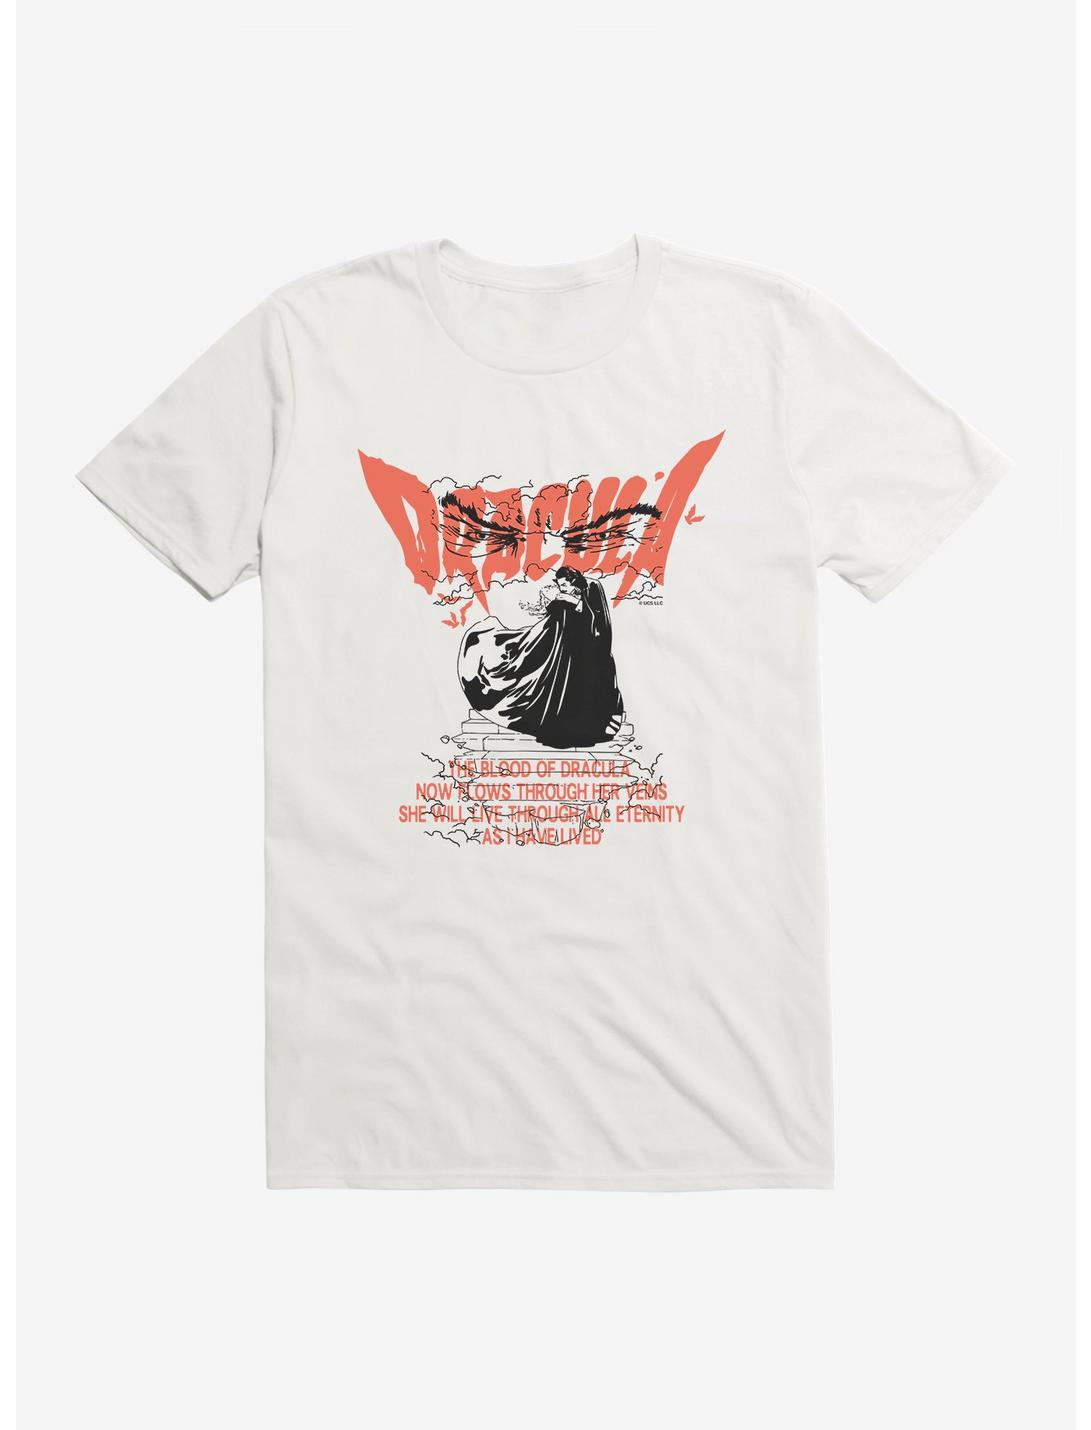 Universal Monsters Dracula Stairway T-Shirt, , hi-res